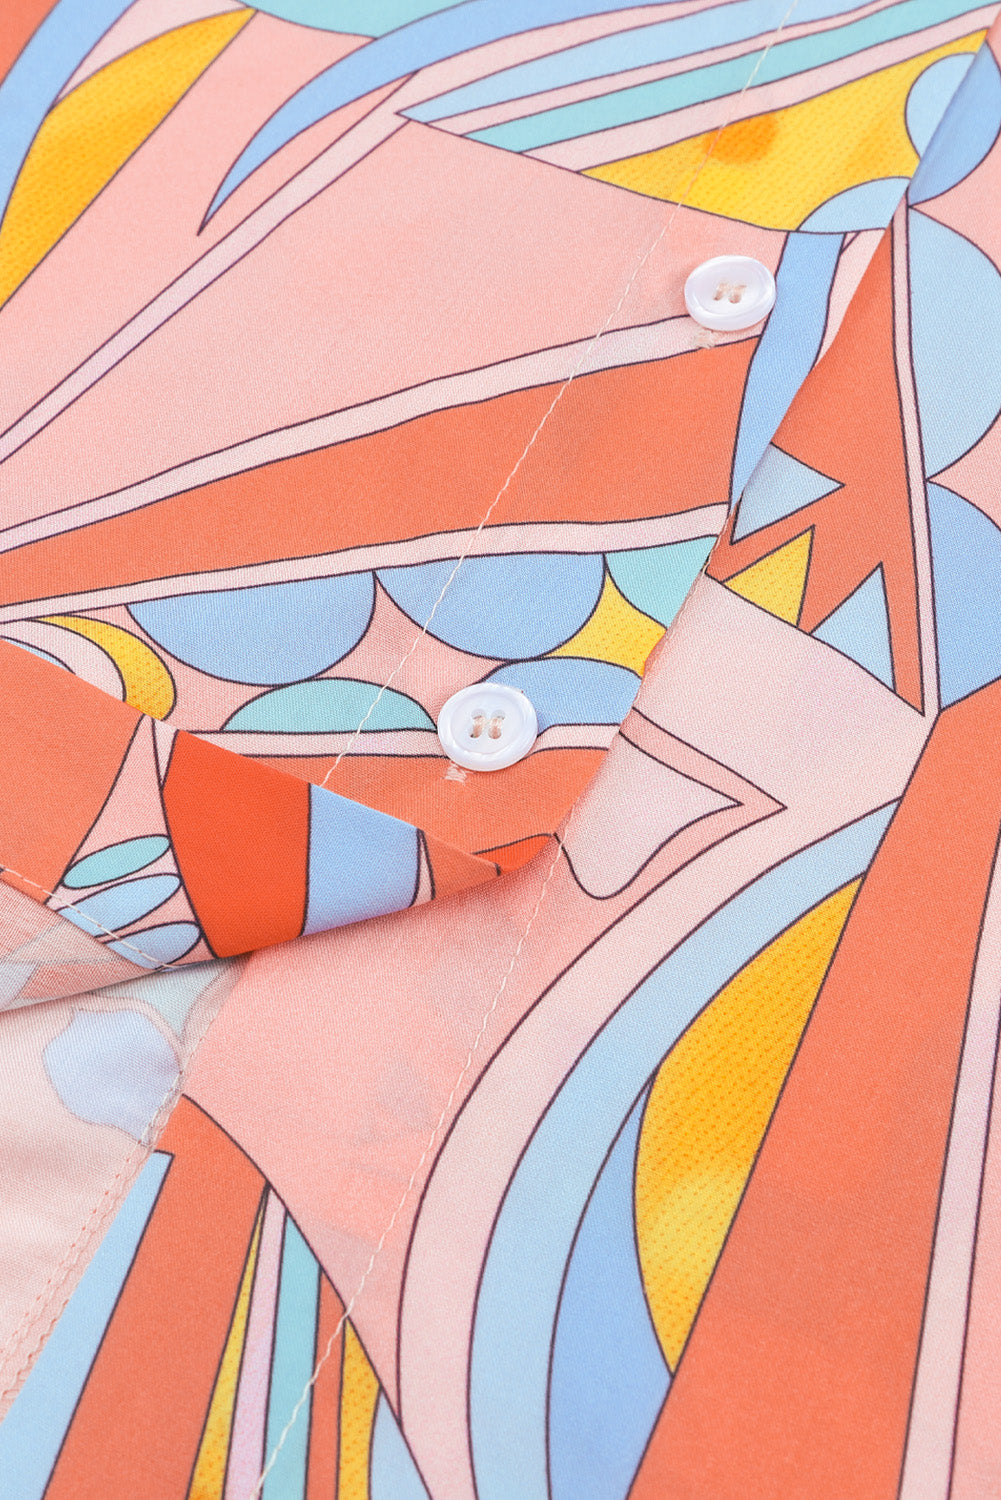 Mehrfarbiges, übergroßes Hemd mit abstraktem geometrischem Print